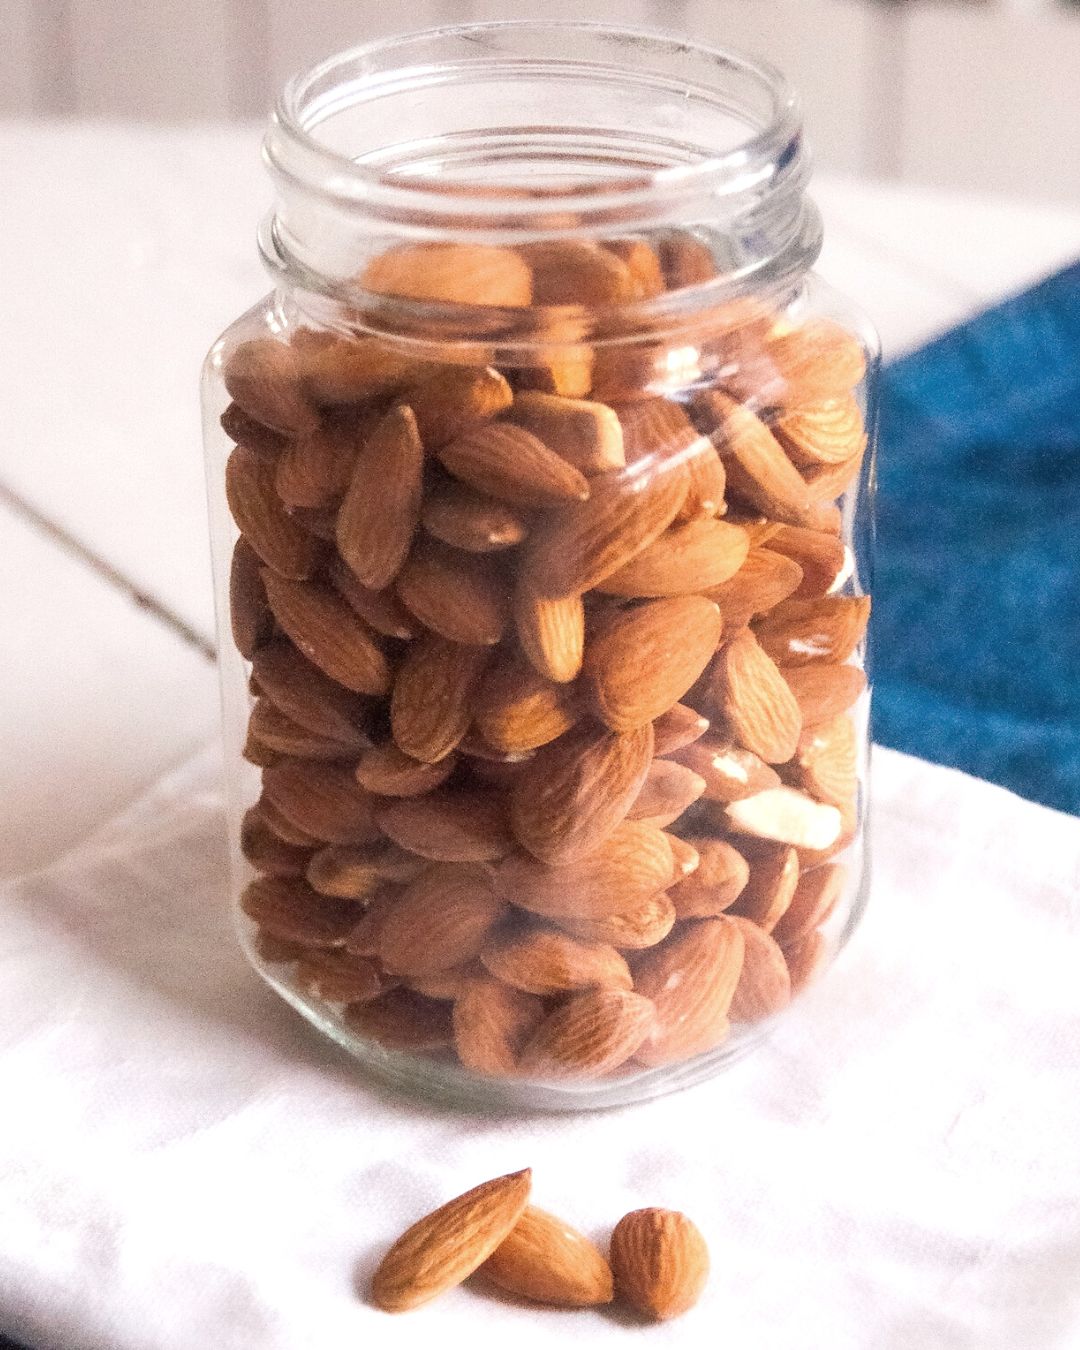 Almonds In A Jar